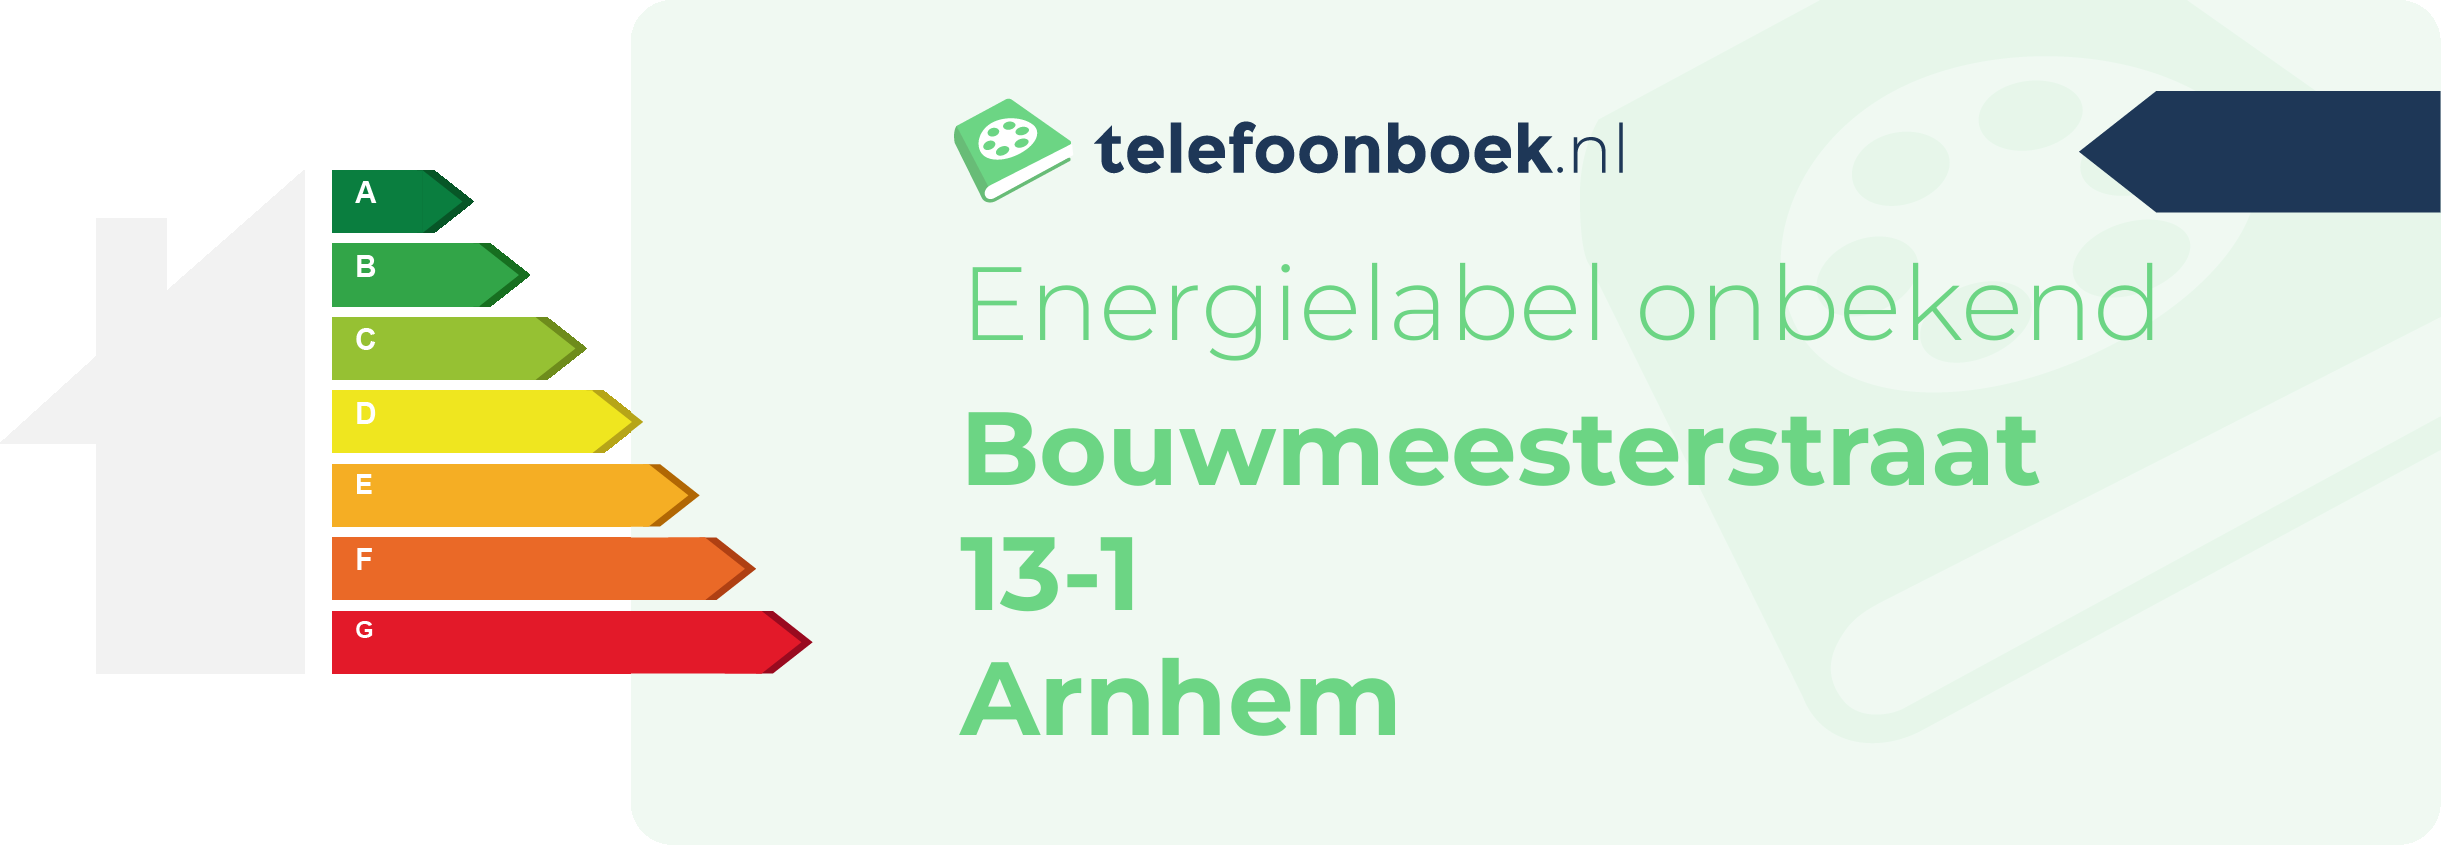 Energielabel Bouwmeesterstraat 13-1 Arnhem